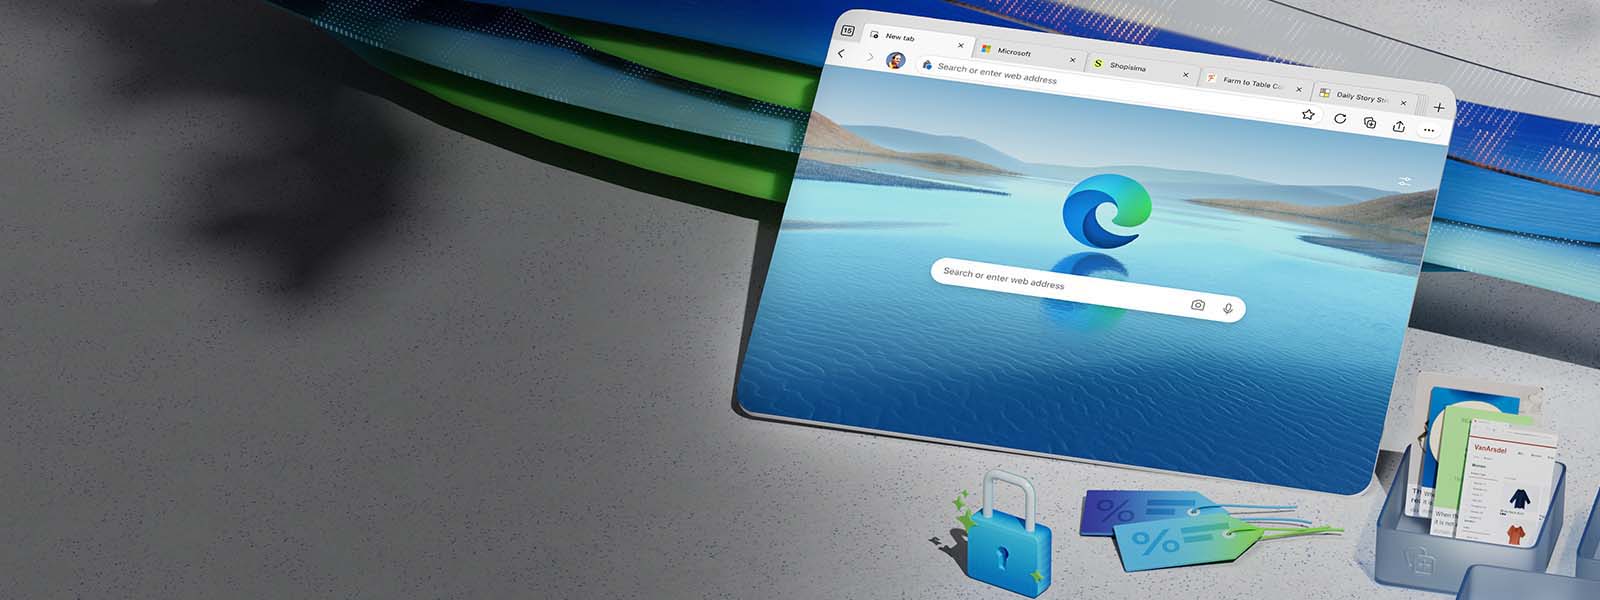 Tela do dispositivo exibindo um ícone do Microsoft Edge com fundo paisagem